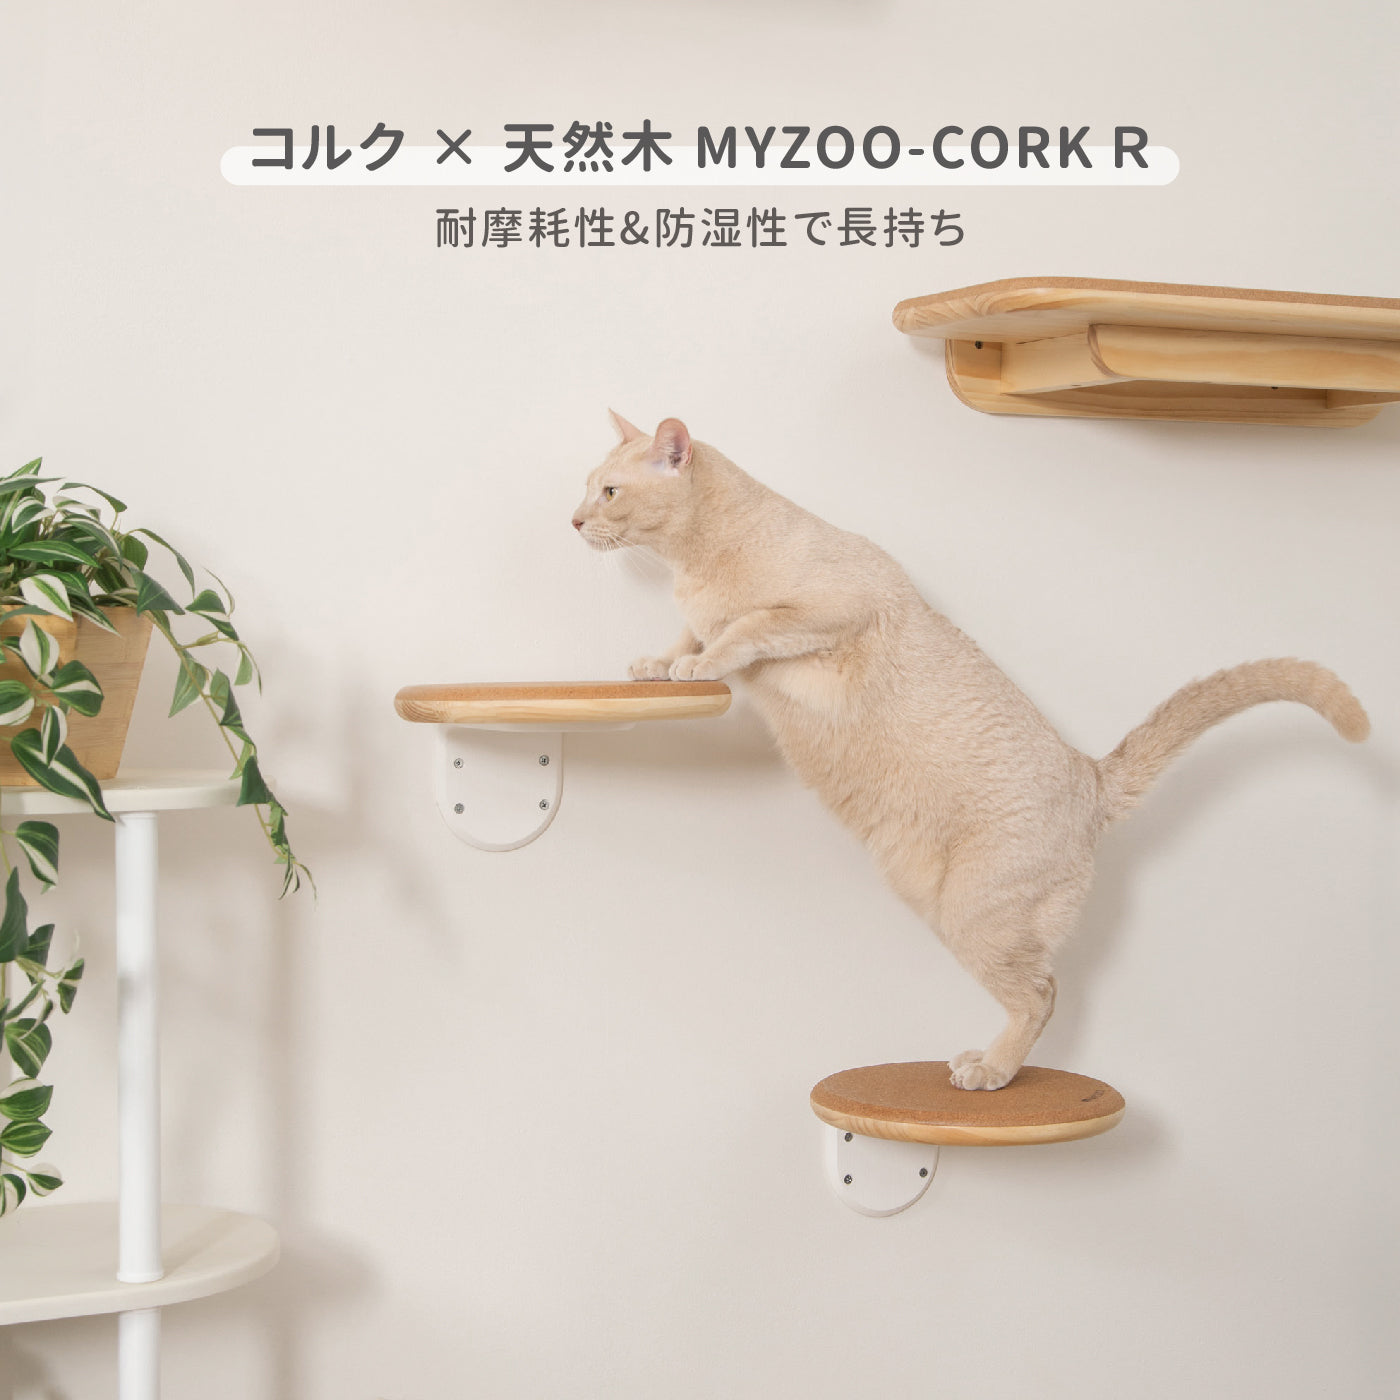 【キャットステップ】MYZOO-CORK-R